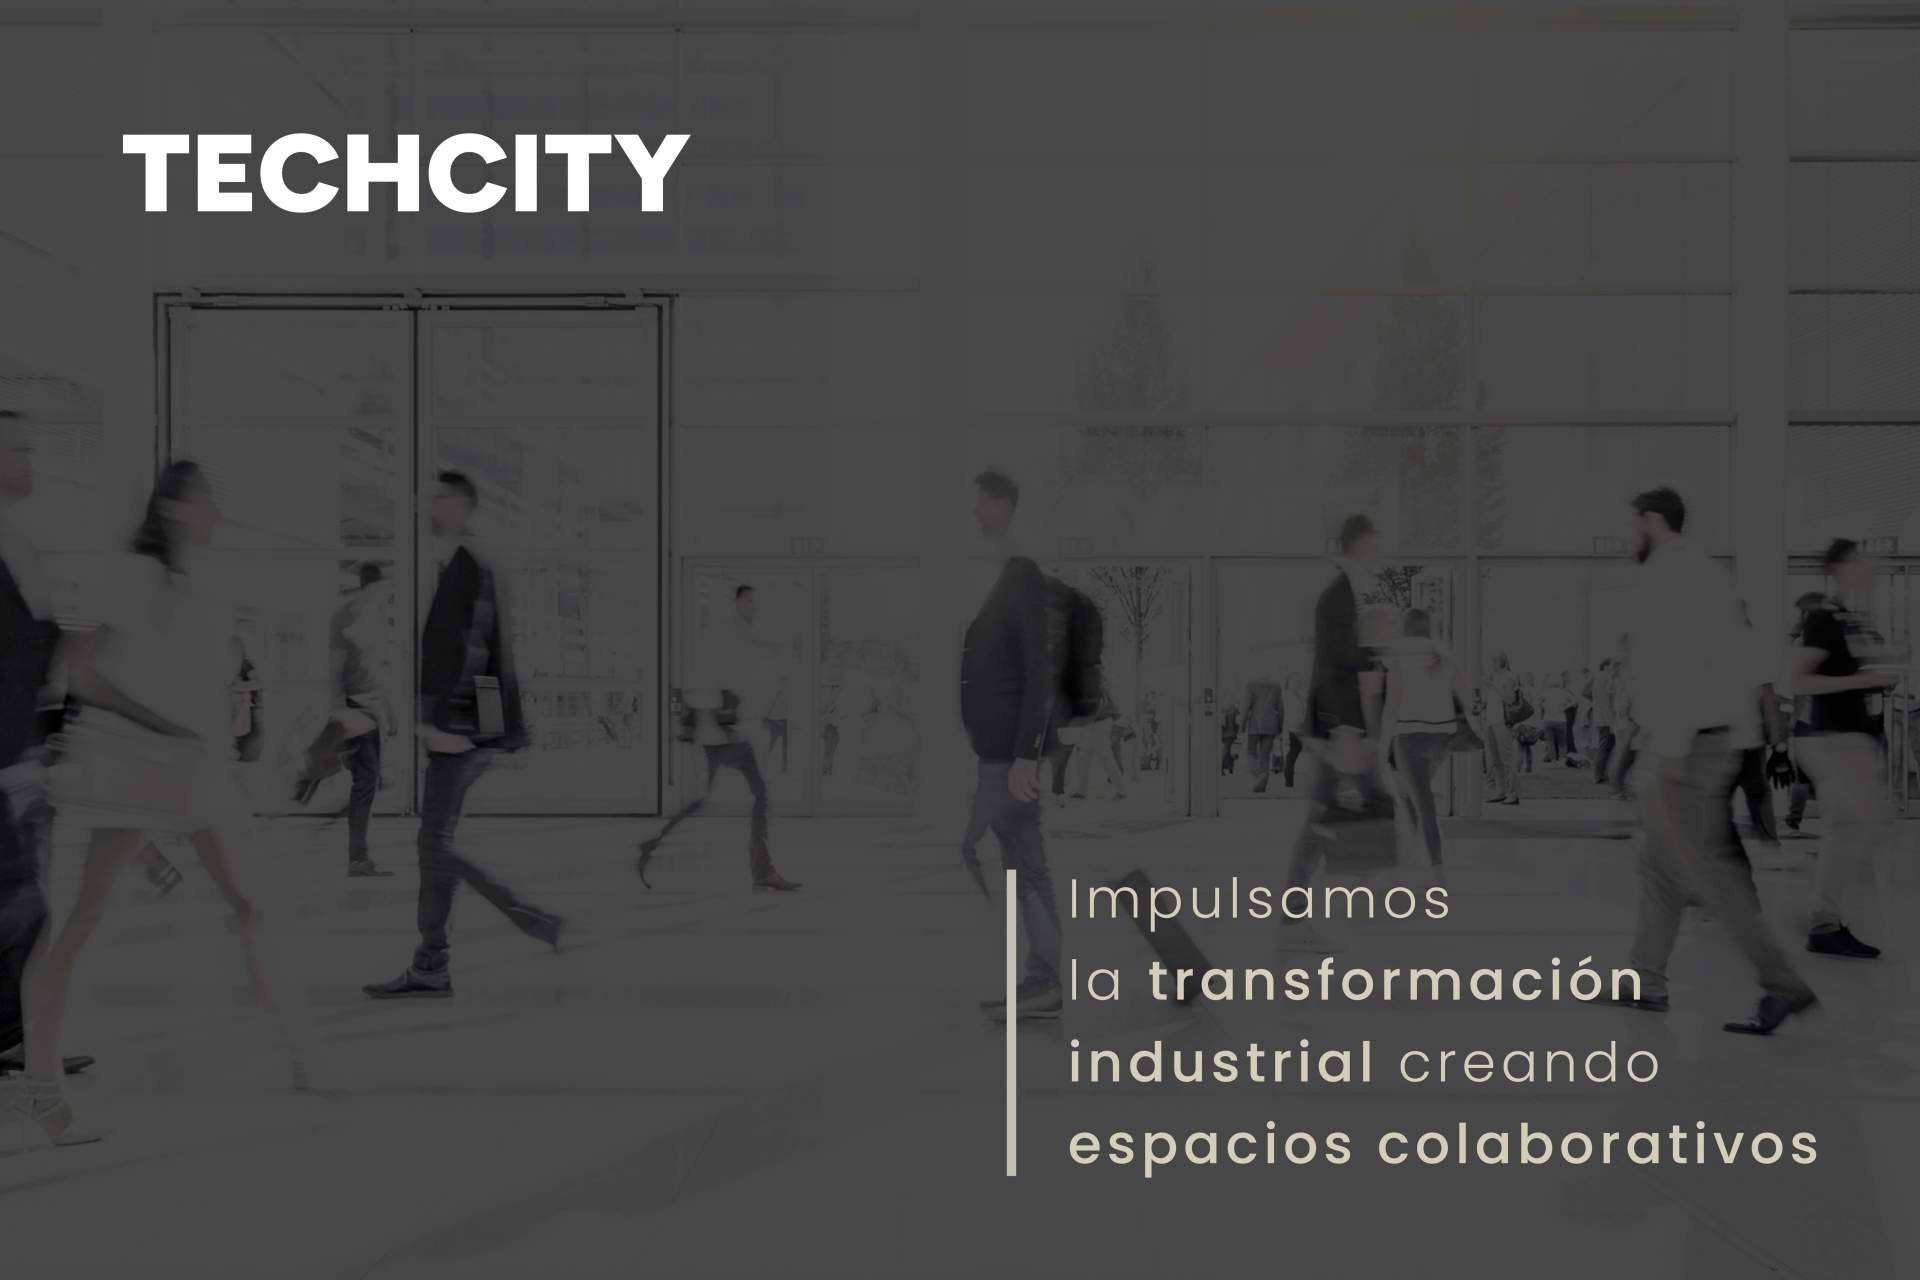  TECHCITY by Orbelgrupo se reafirma como líder en transformación industrial con una nueva imagen y enfoque global 